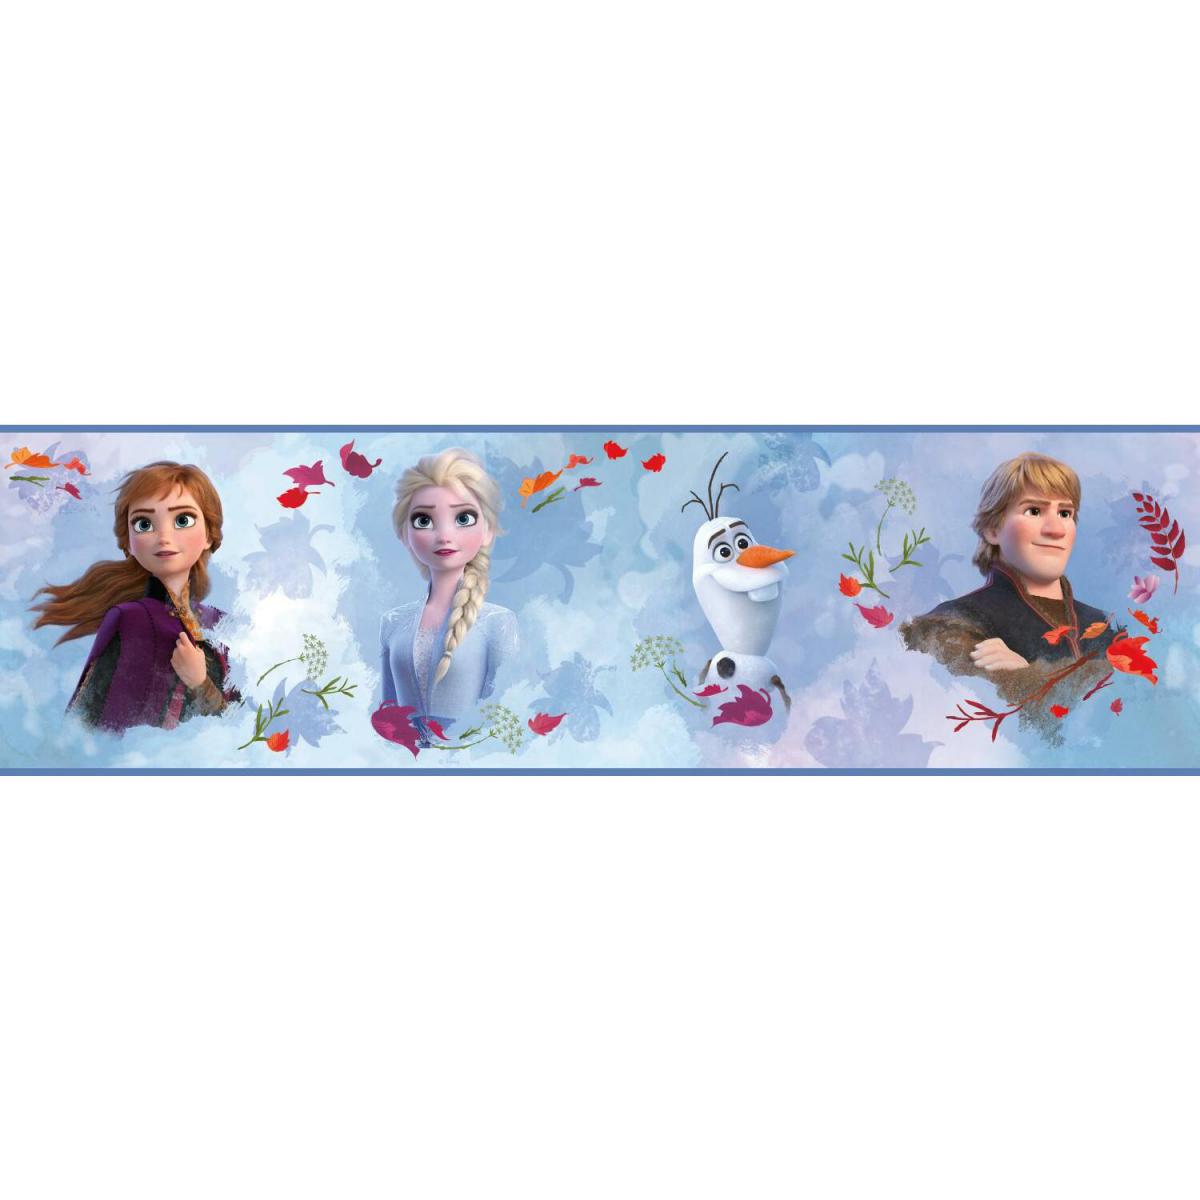 Roommates - Frise adhésive Frozen 2 - La Reine des neiges II DISNEY - 15,24 cm x 4.57 m - Frise murale